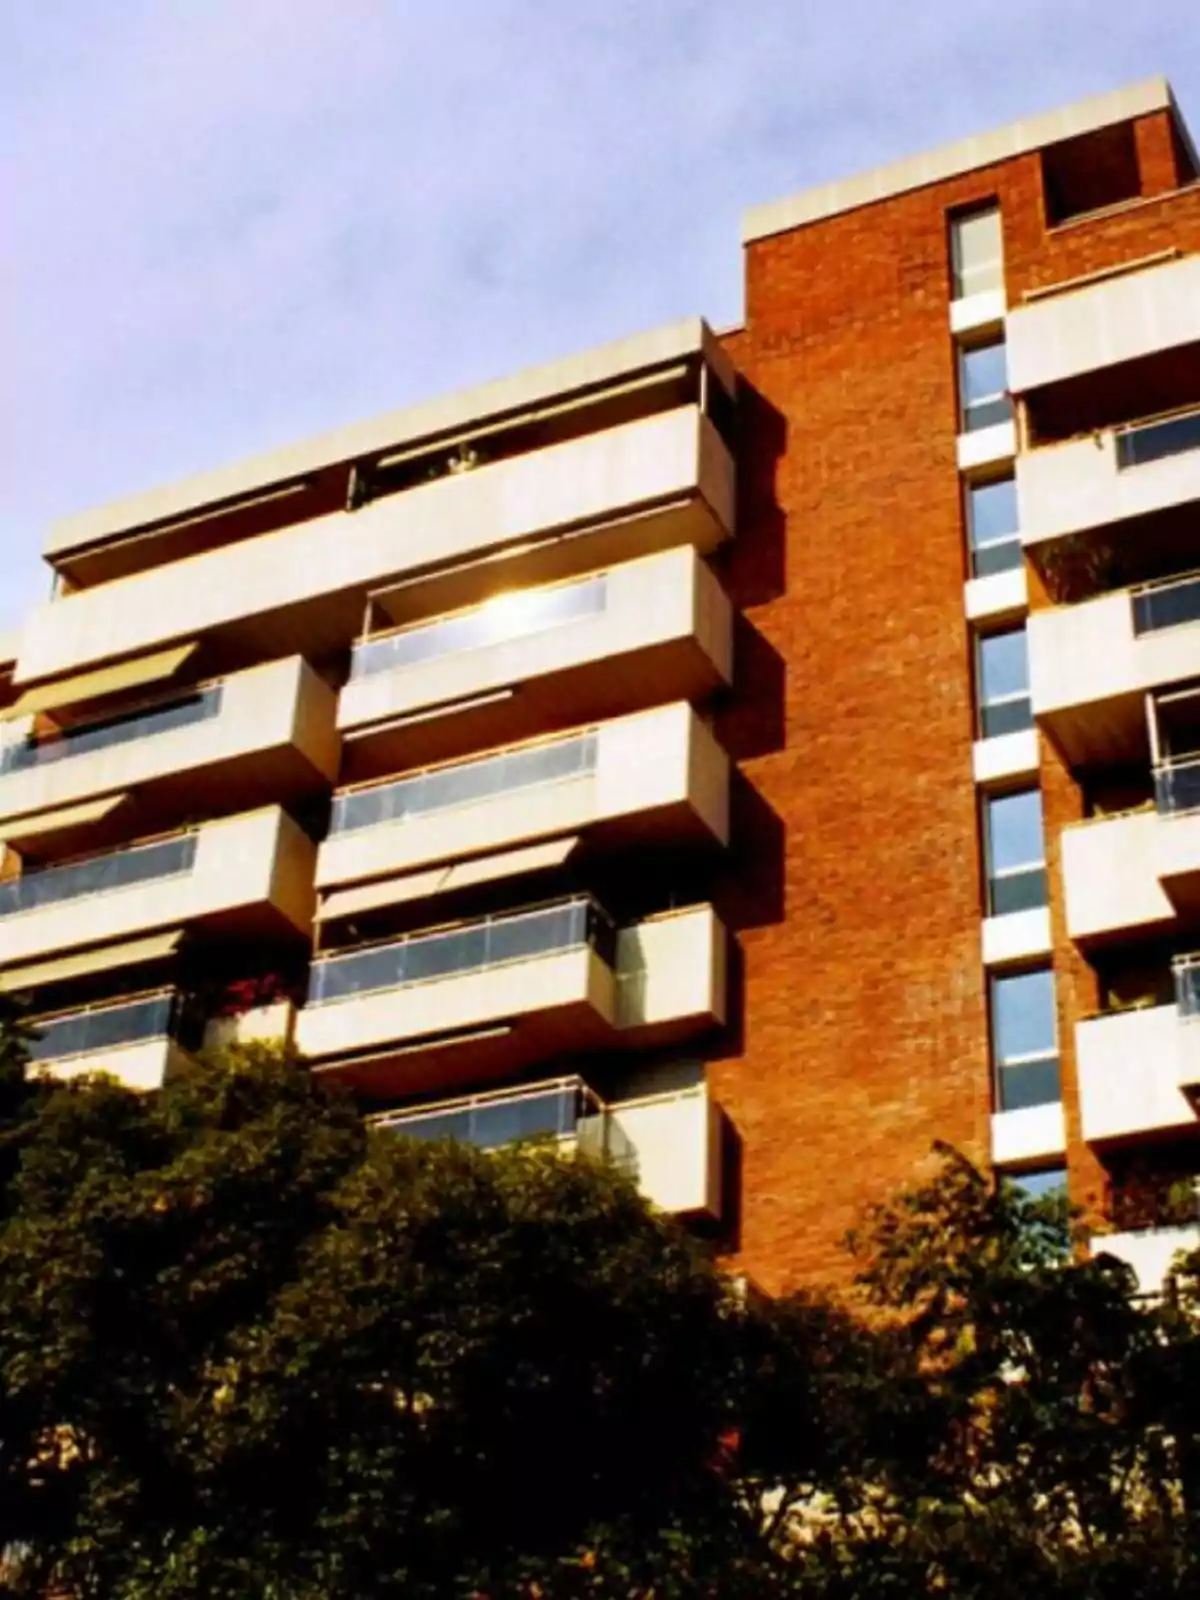 Edificio de apartamentos de ladrillo con balcones y árboles en primer plano.